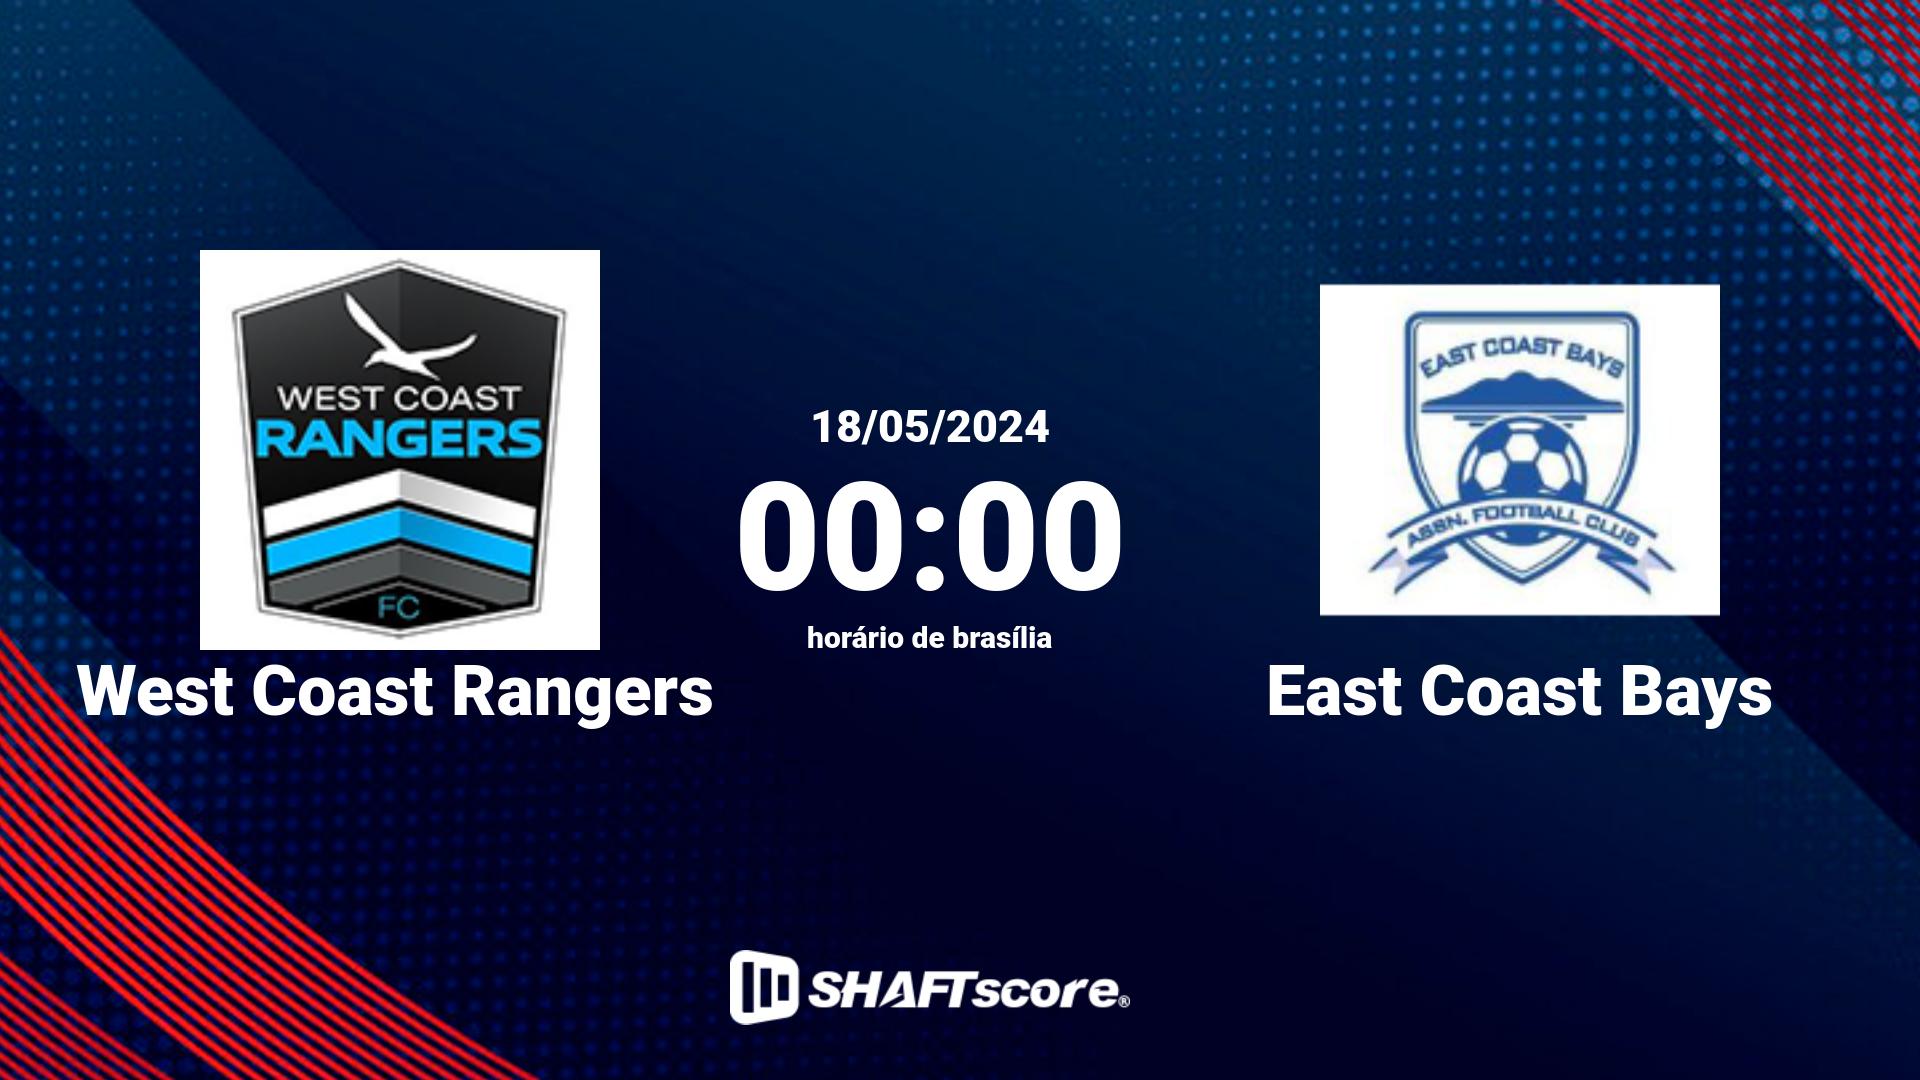 Estatísticas do jogo West Coast Rangers vs East Coast Bays 18.05 00:00